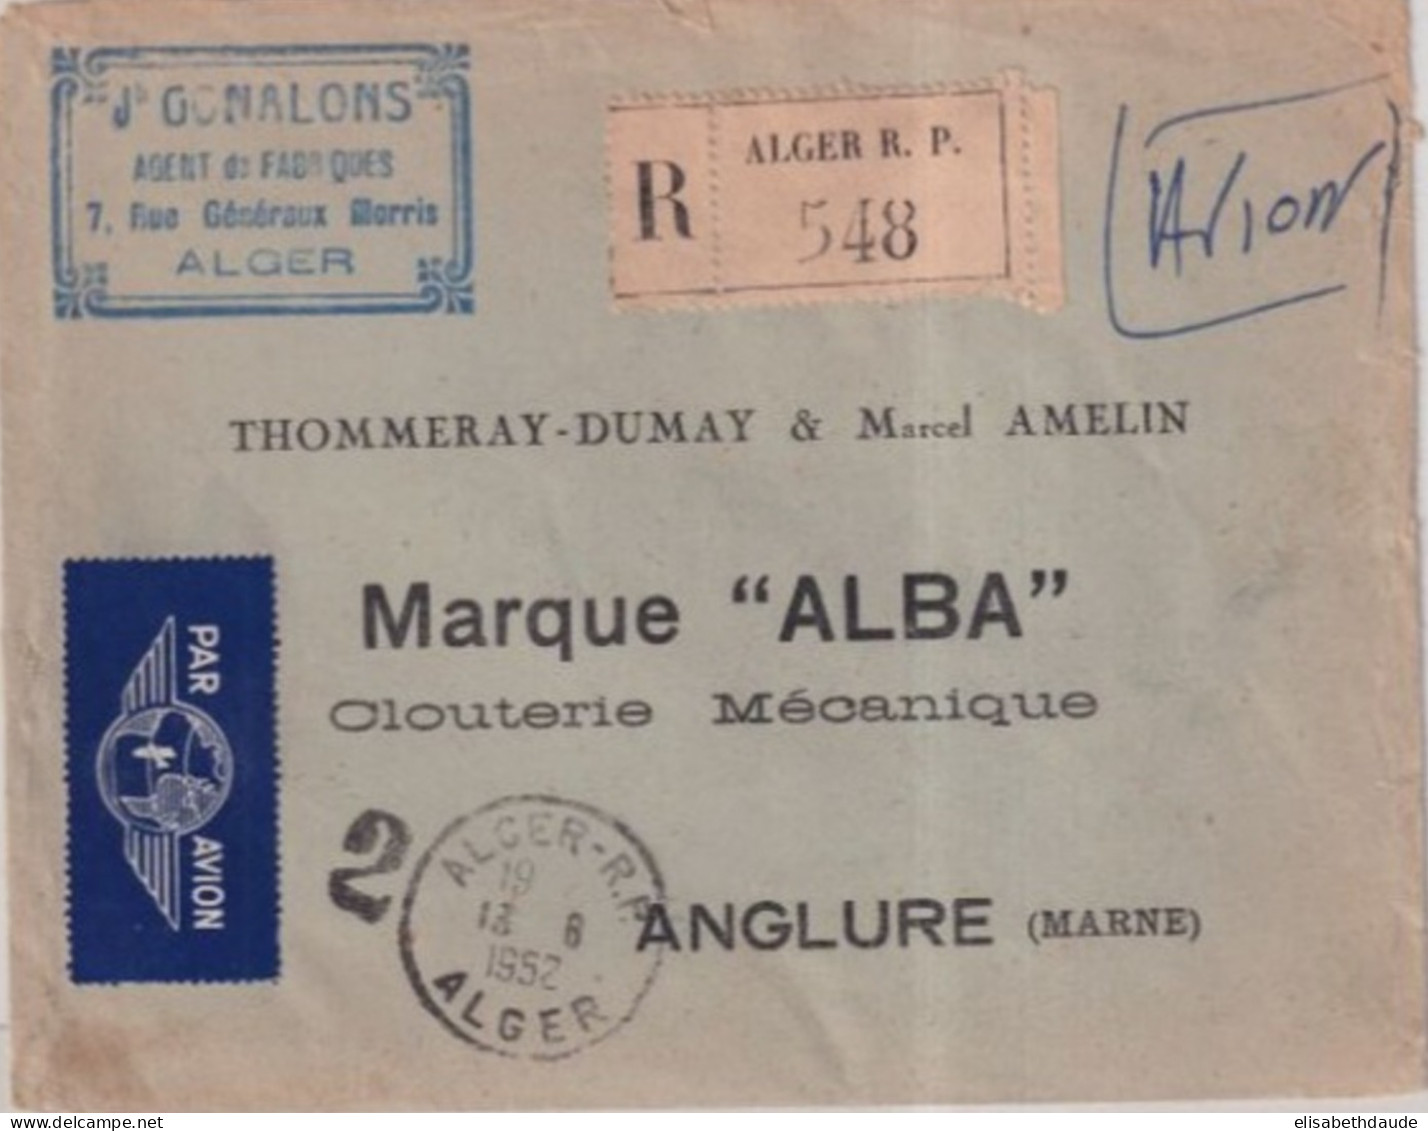 ALGERIE - 1952 - CACHET "GUICHET De RECOMMANDE" N°2 De ALGER - ENVELOPPE AVION => ANGLURE (MARNE) - Lettres & Documents